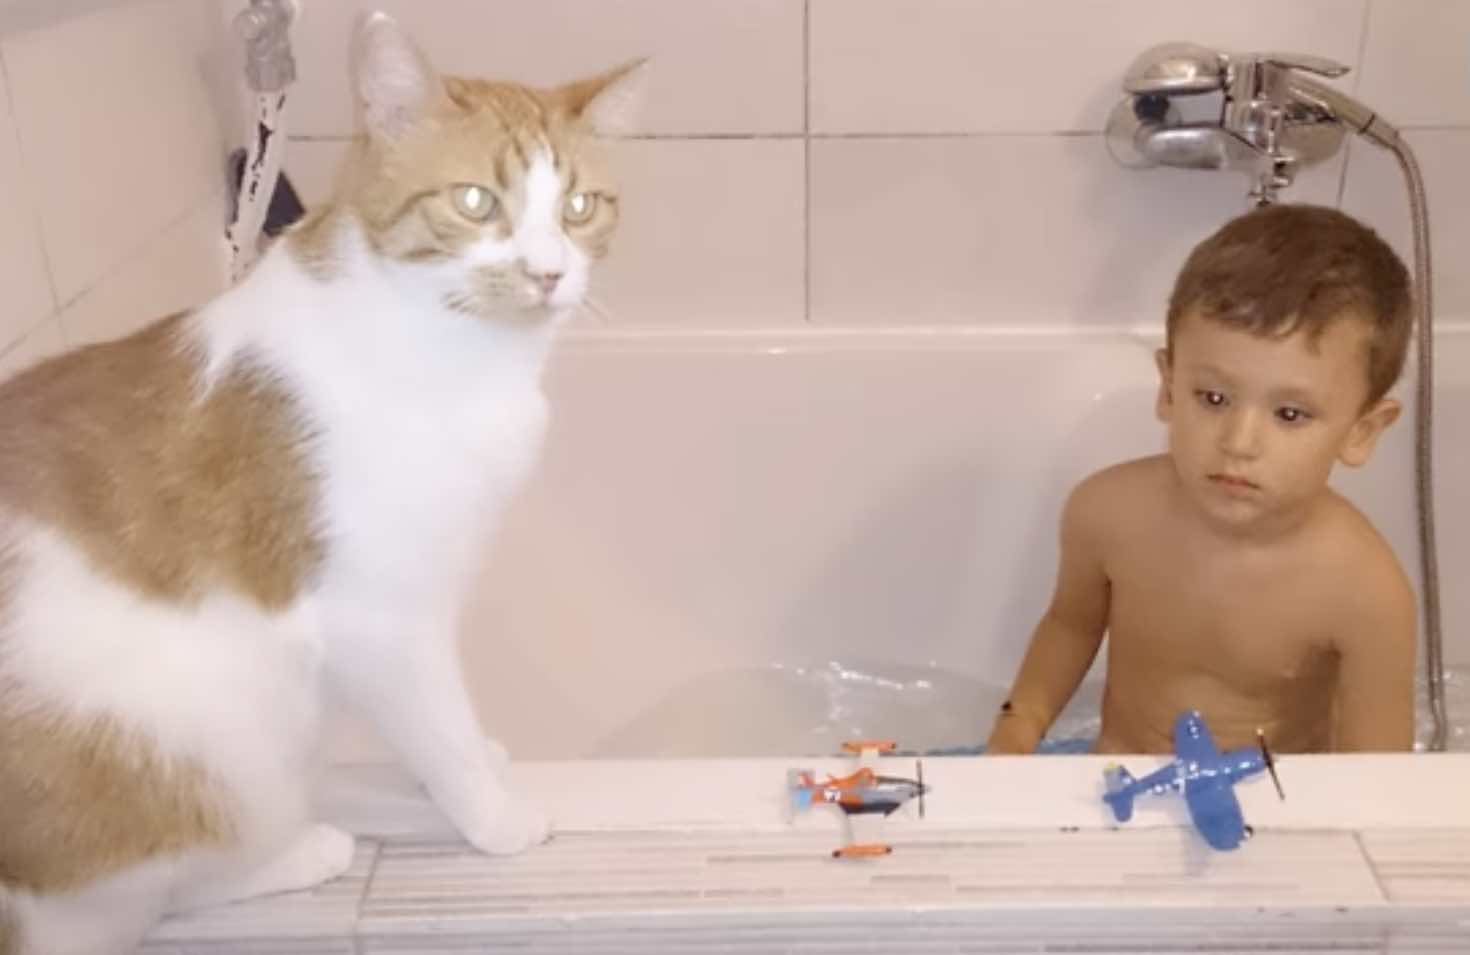 cat and boy bath